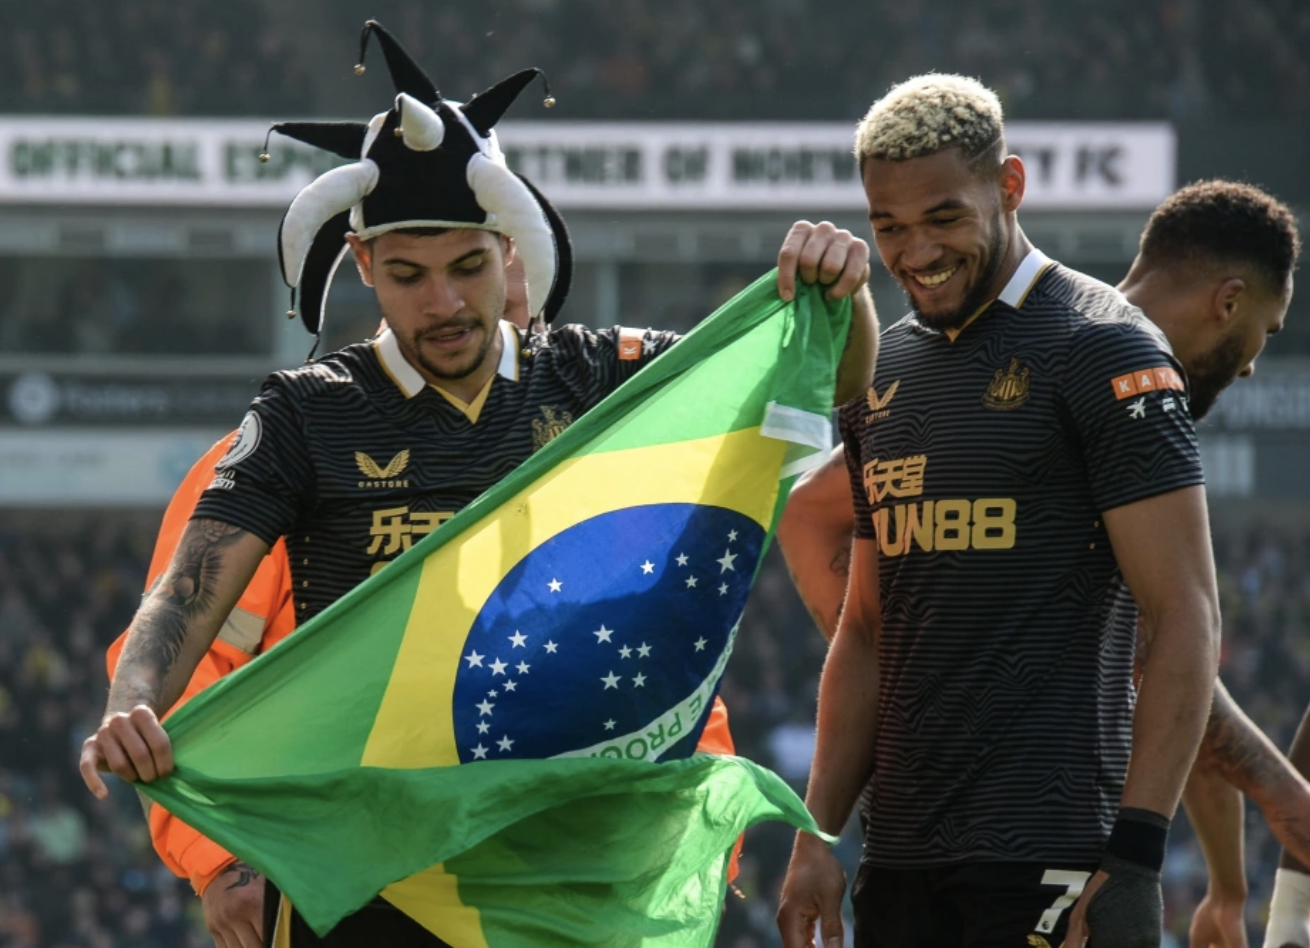 Newcastle mời chào lương khủng, Neymar chờ cú chuyển nhượng sốc - Ảnh 5.